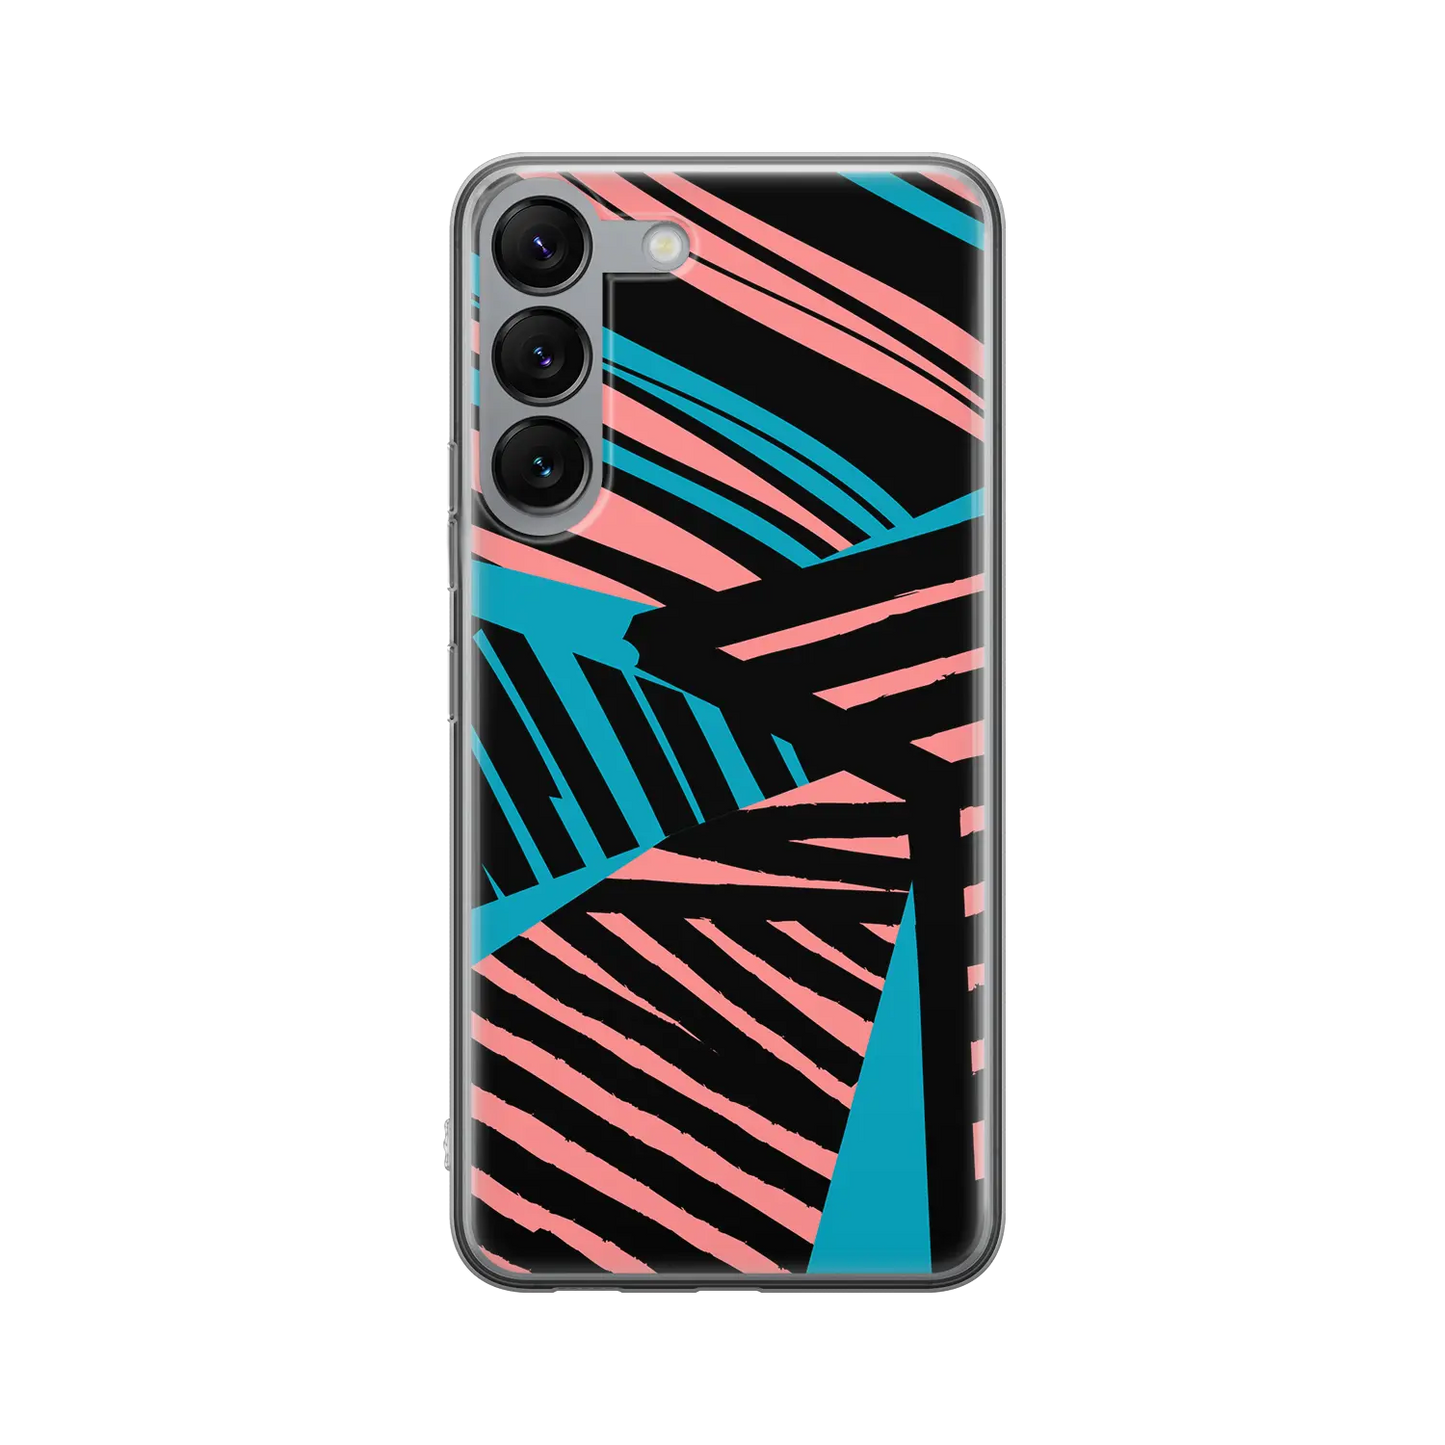 Stripes - Custom Galaxy S Case